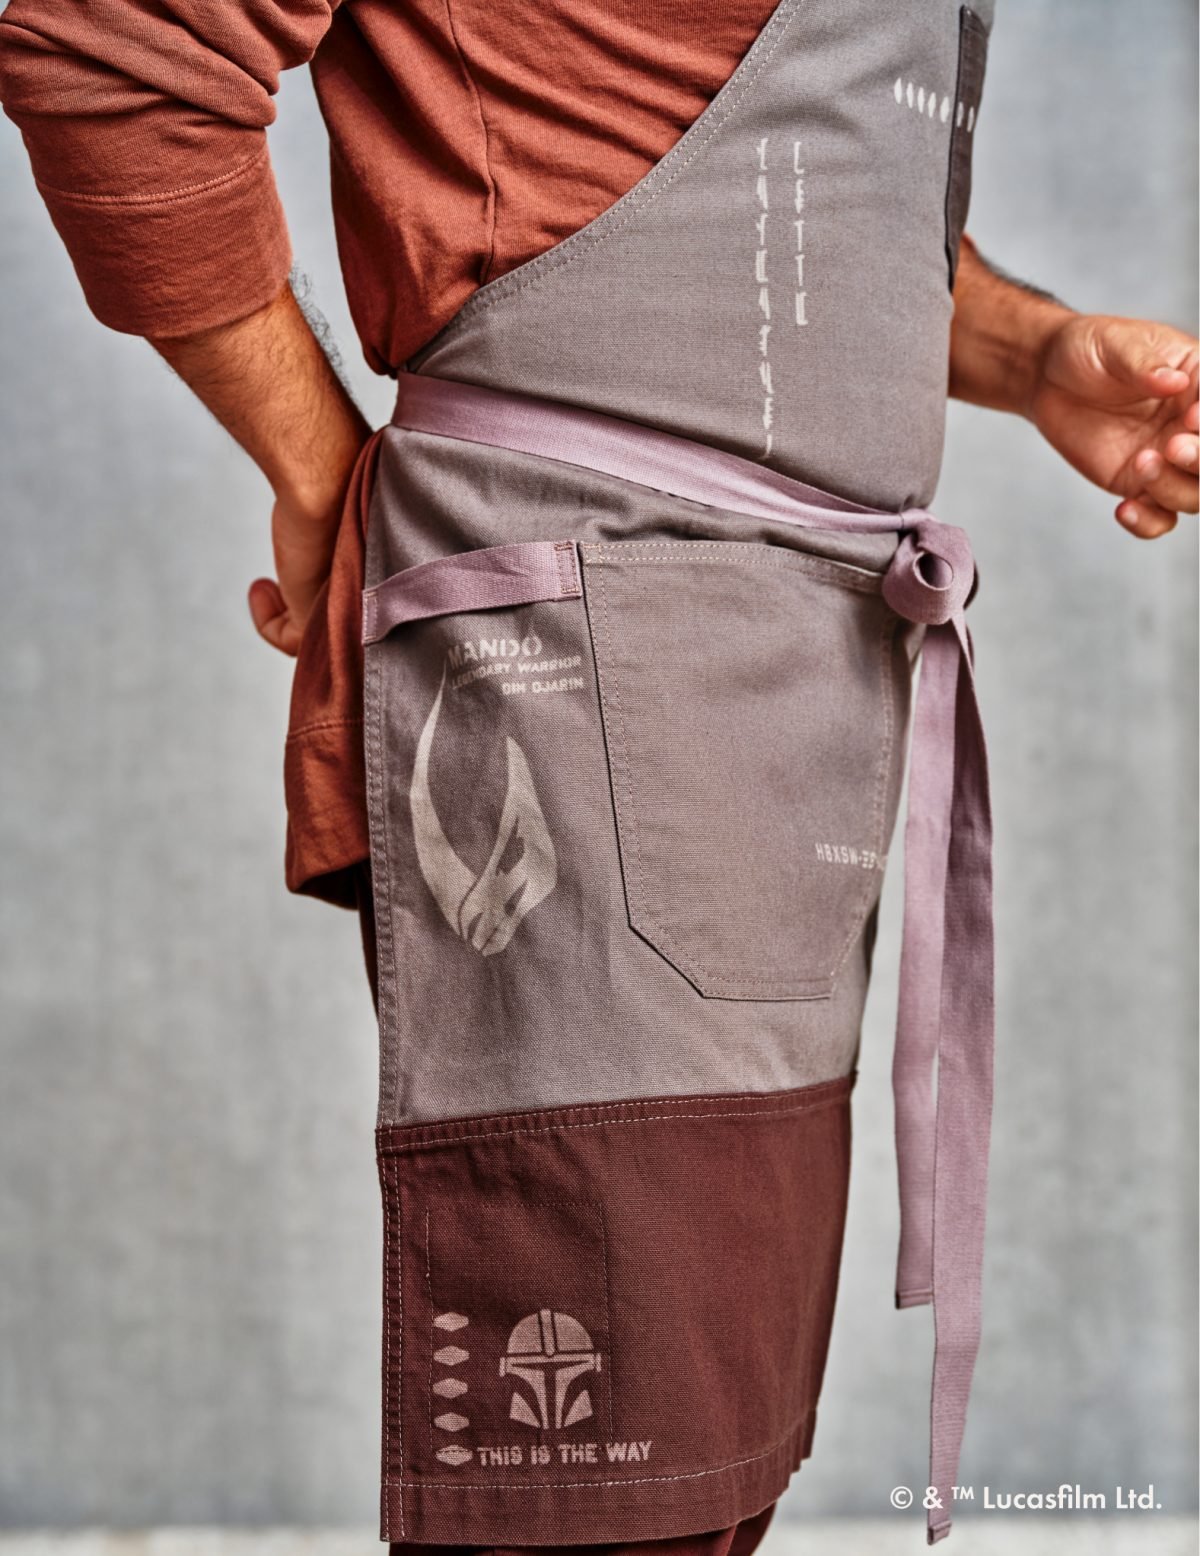 A person wearing a Mandalorian apron